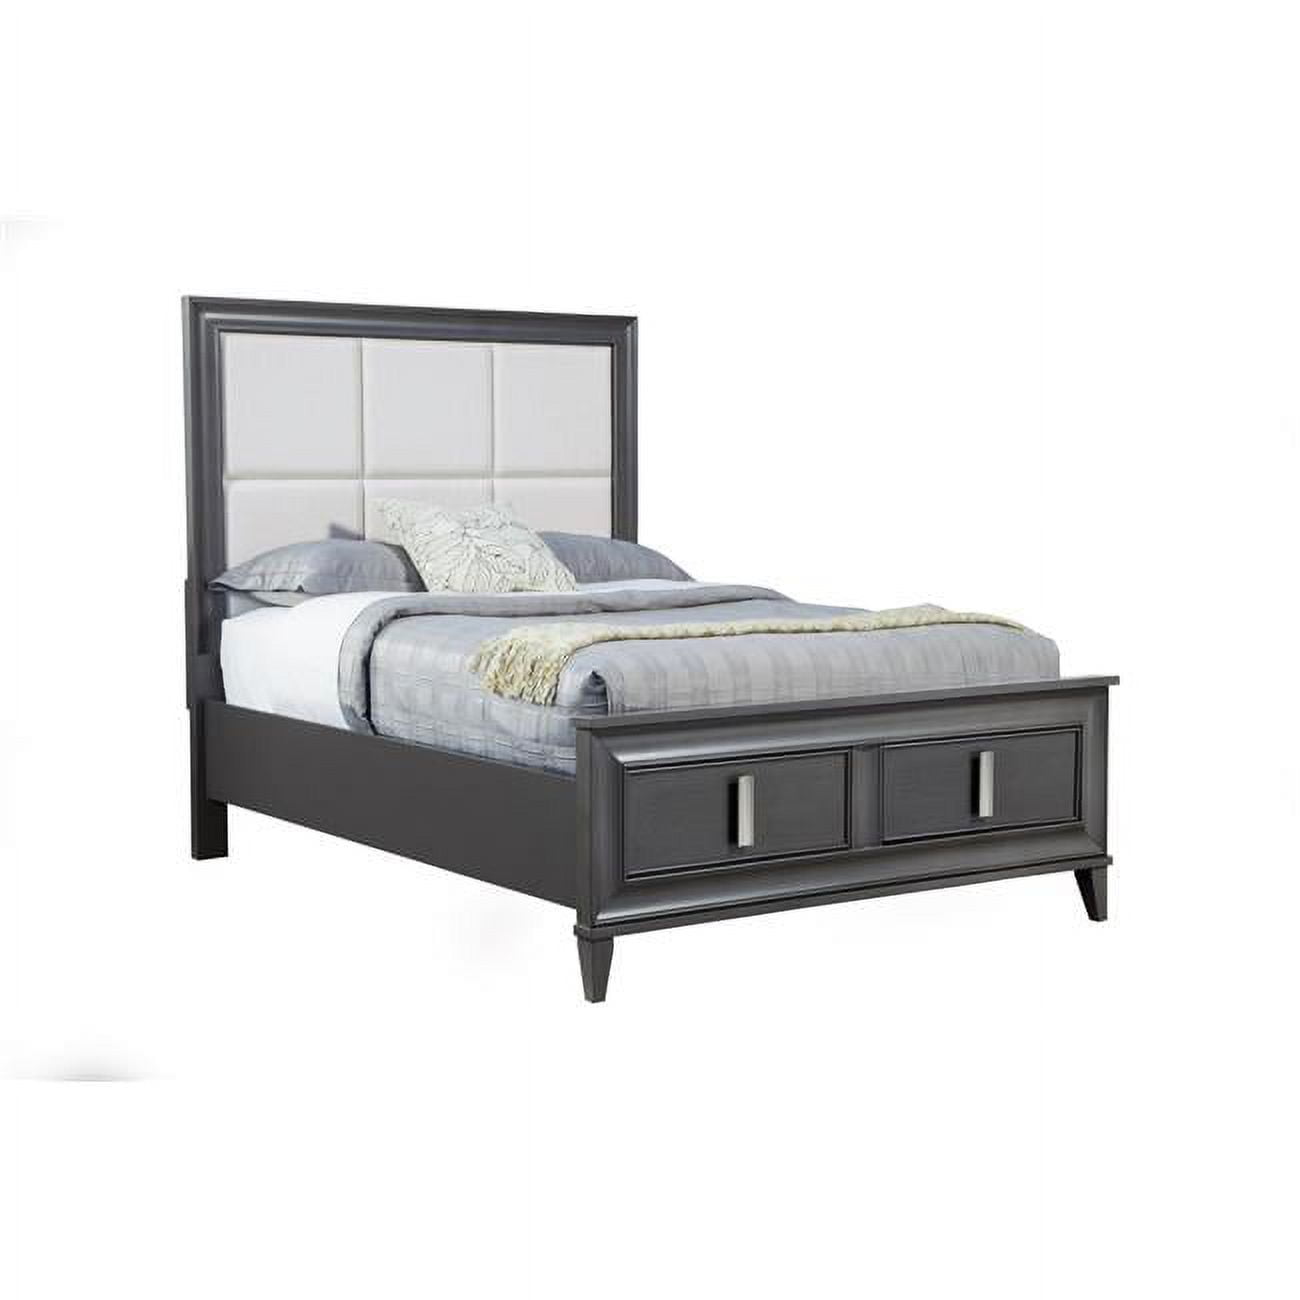 Picture of Alpine Furniture 8171-07CK Lorraine Storage Footboard Platform Bed, Dark Grey - California King Size